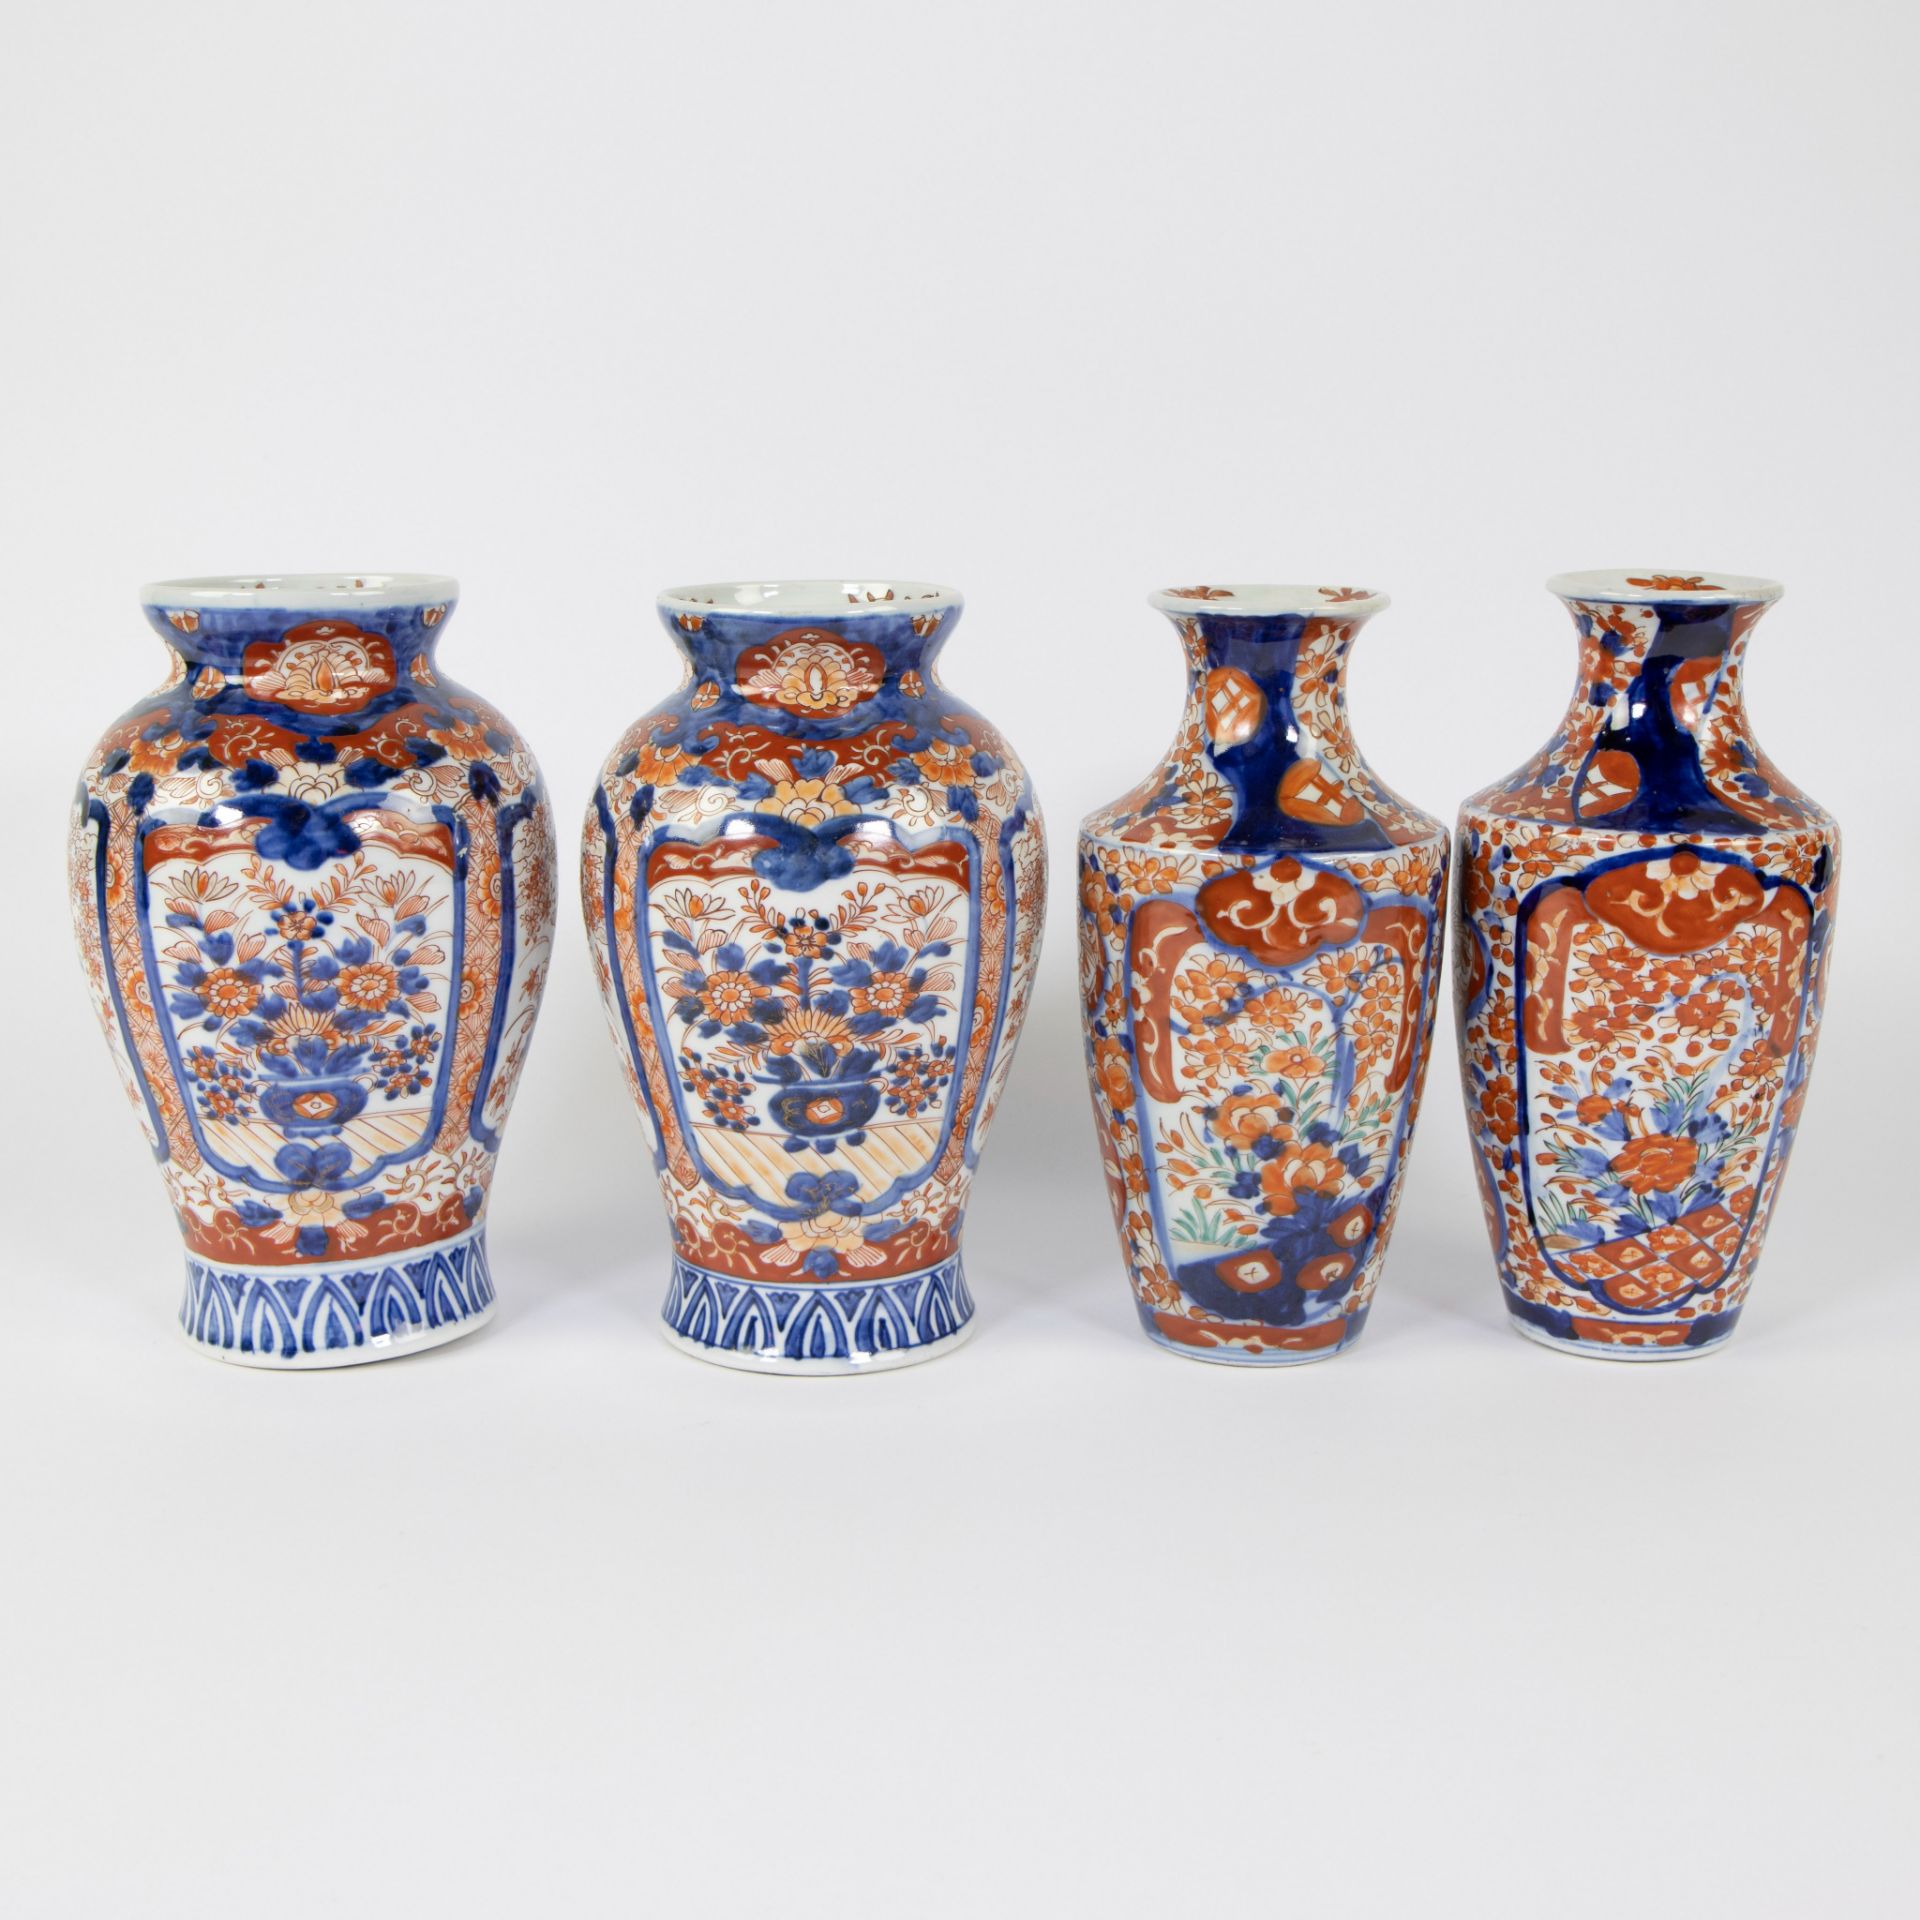 2 pairs of Japanese Imari vases, 19th century